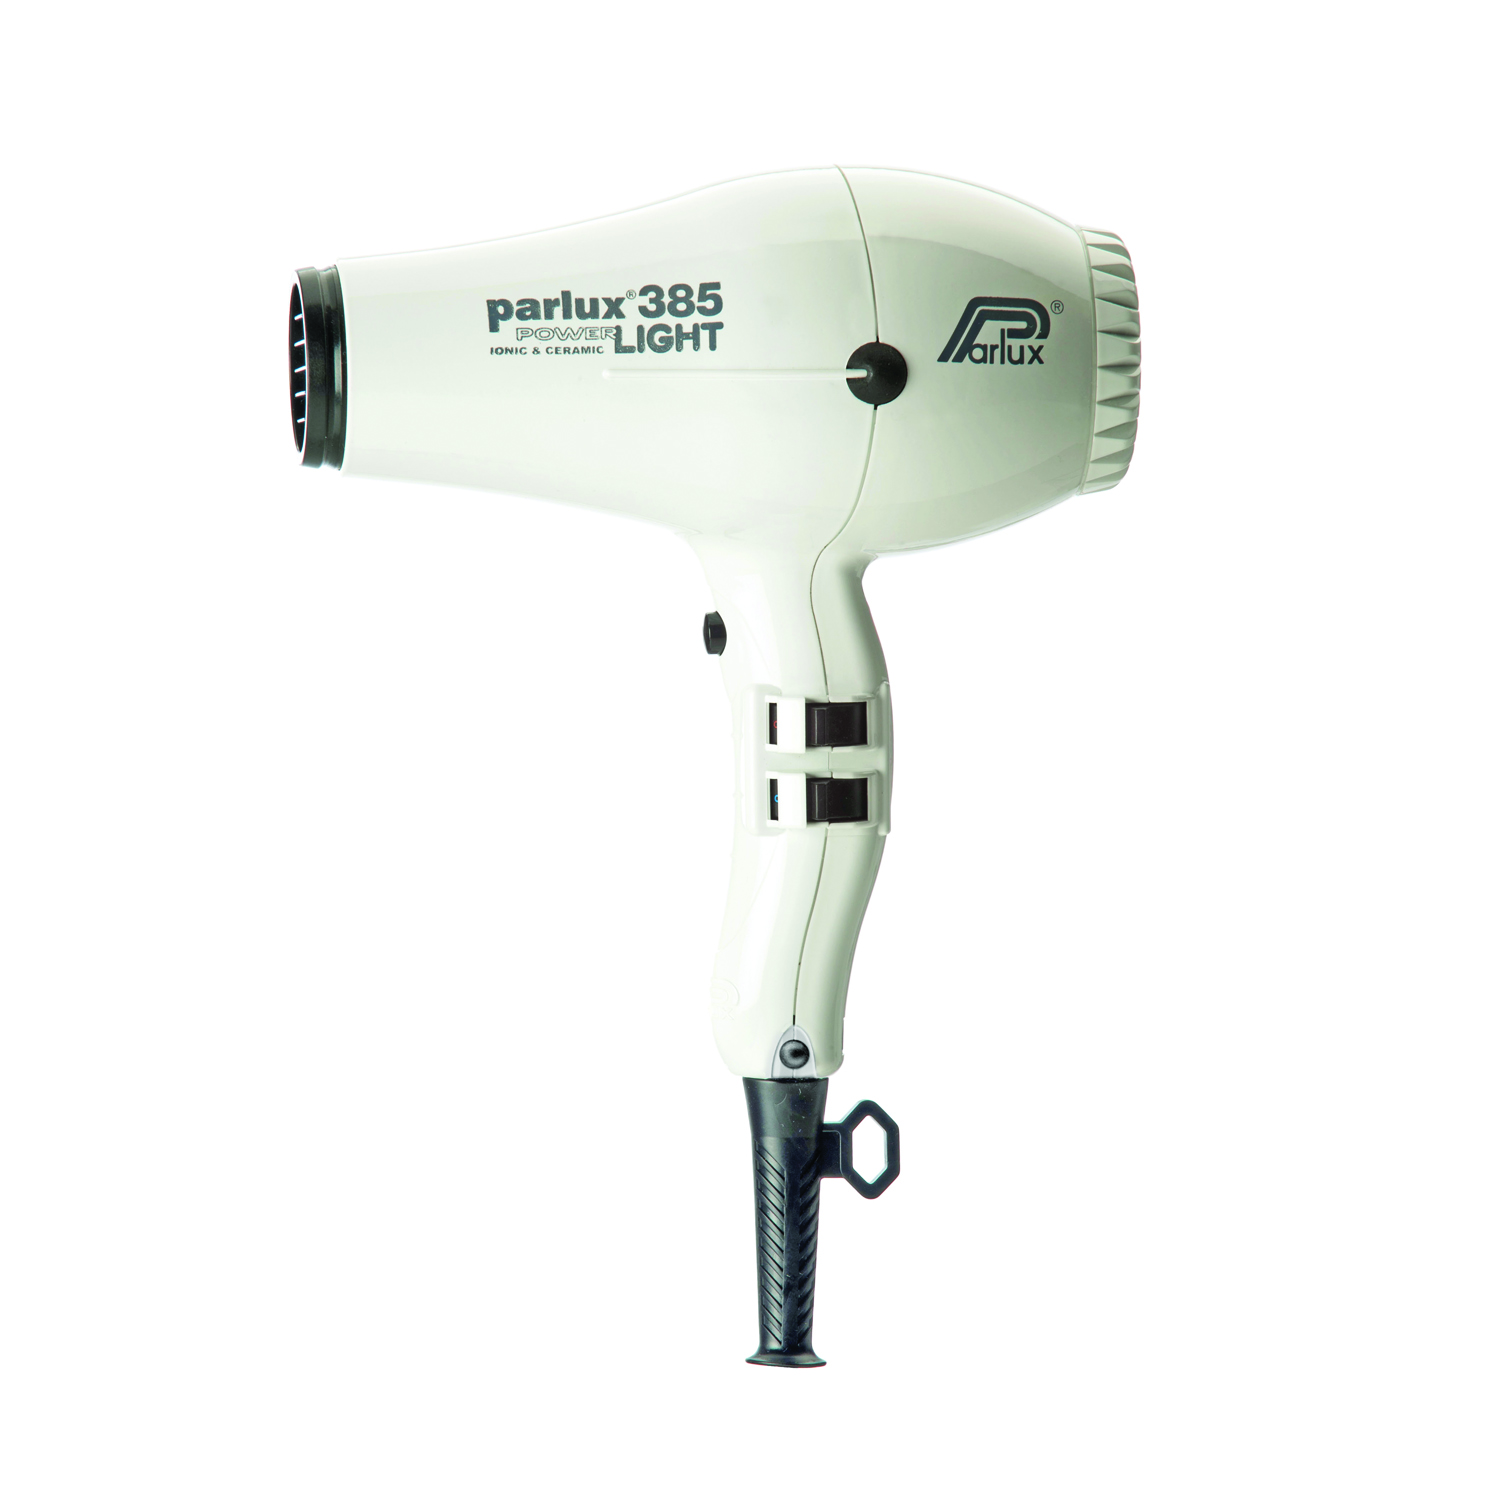 Parlux 385 Power Light White